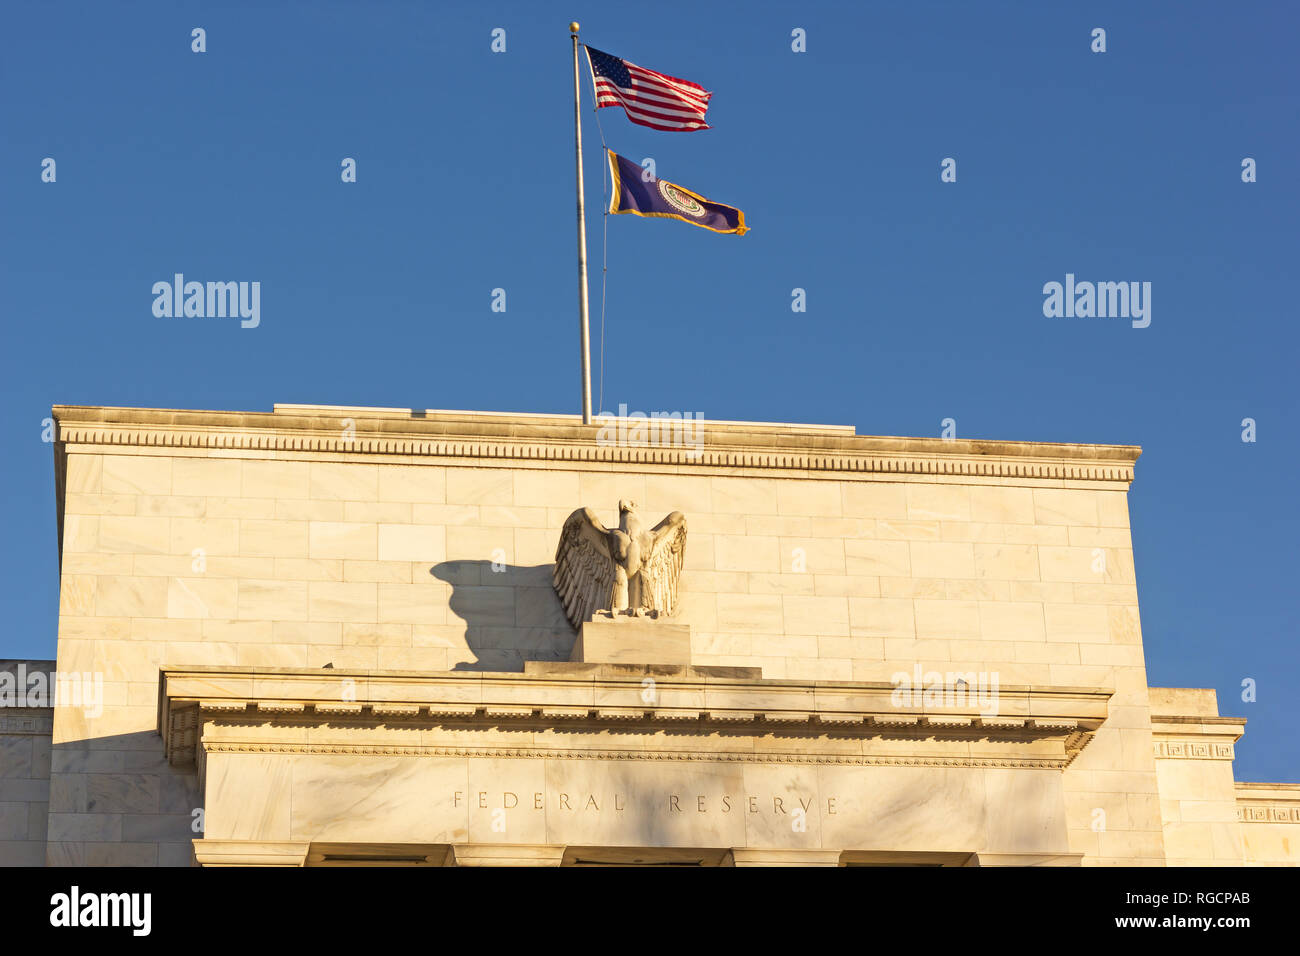 Le quartier général de la Réserve fédérale des États-Unis à Washington DC, USA. Bâtiment d'Eccles et nourris avec les National flags sous un ciel clair en début de matinée. Banque D'Images